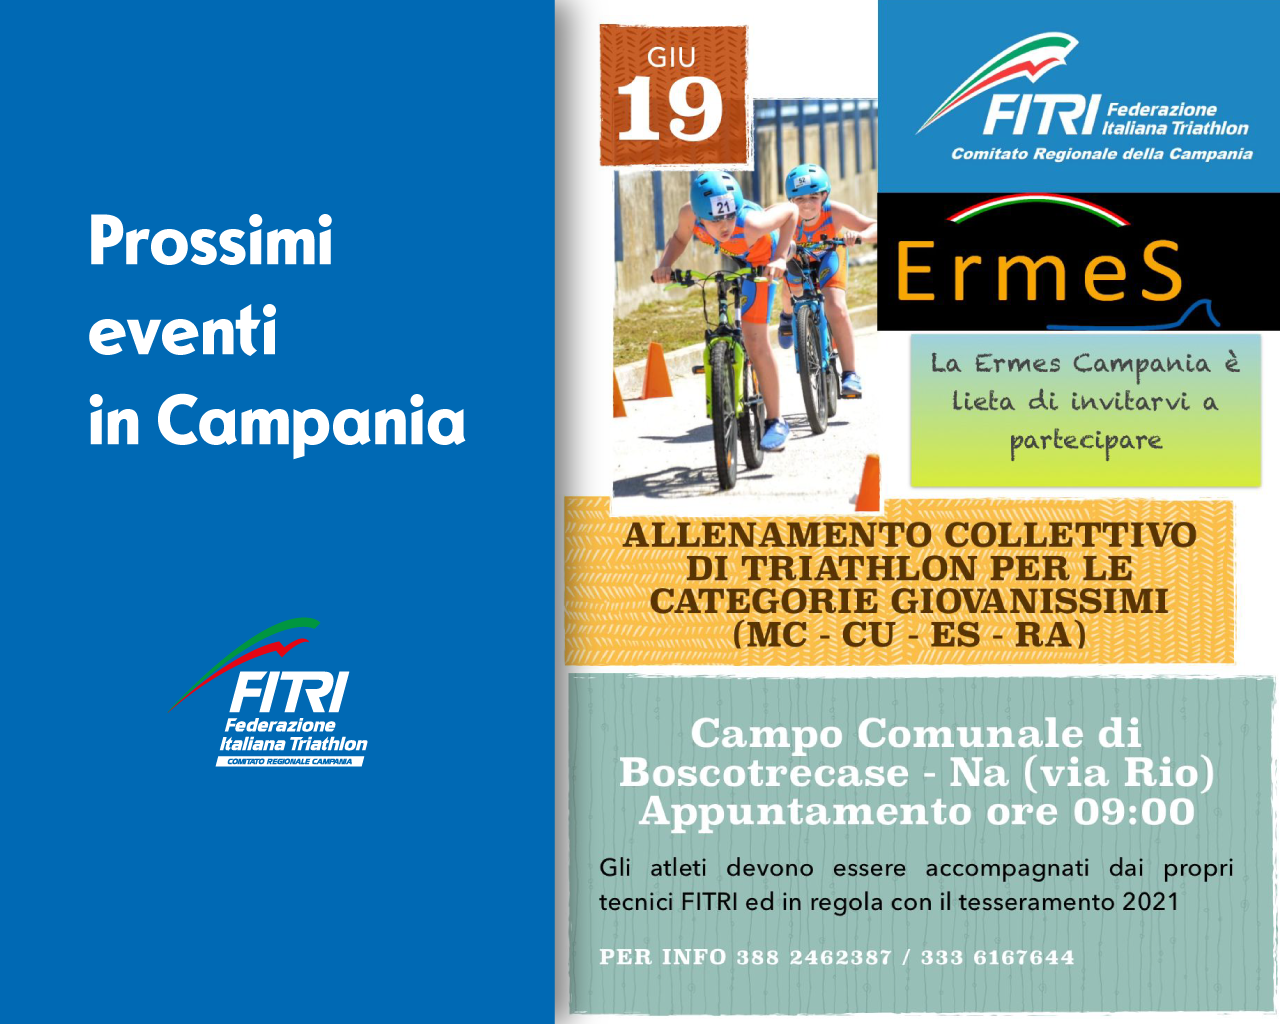 cover-eventi---ermes-19giugno2021-FITRI-Campania.png